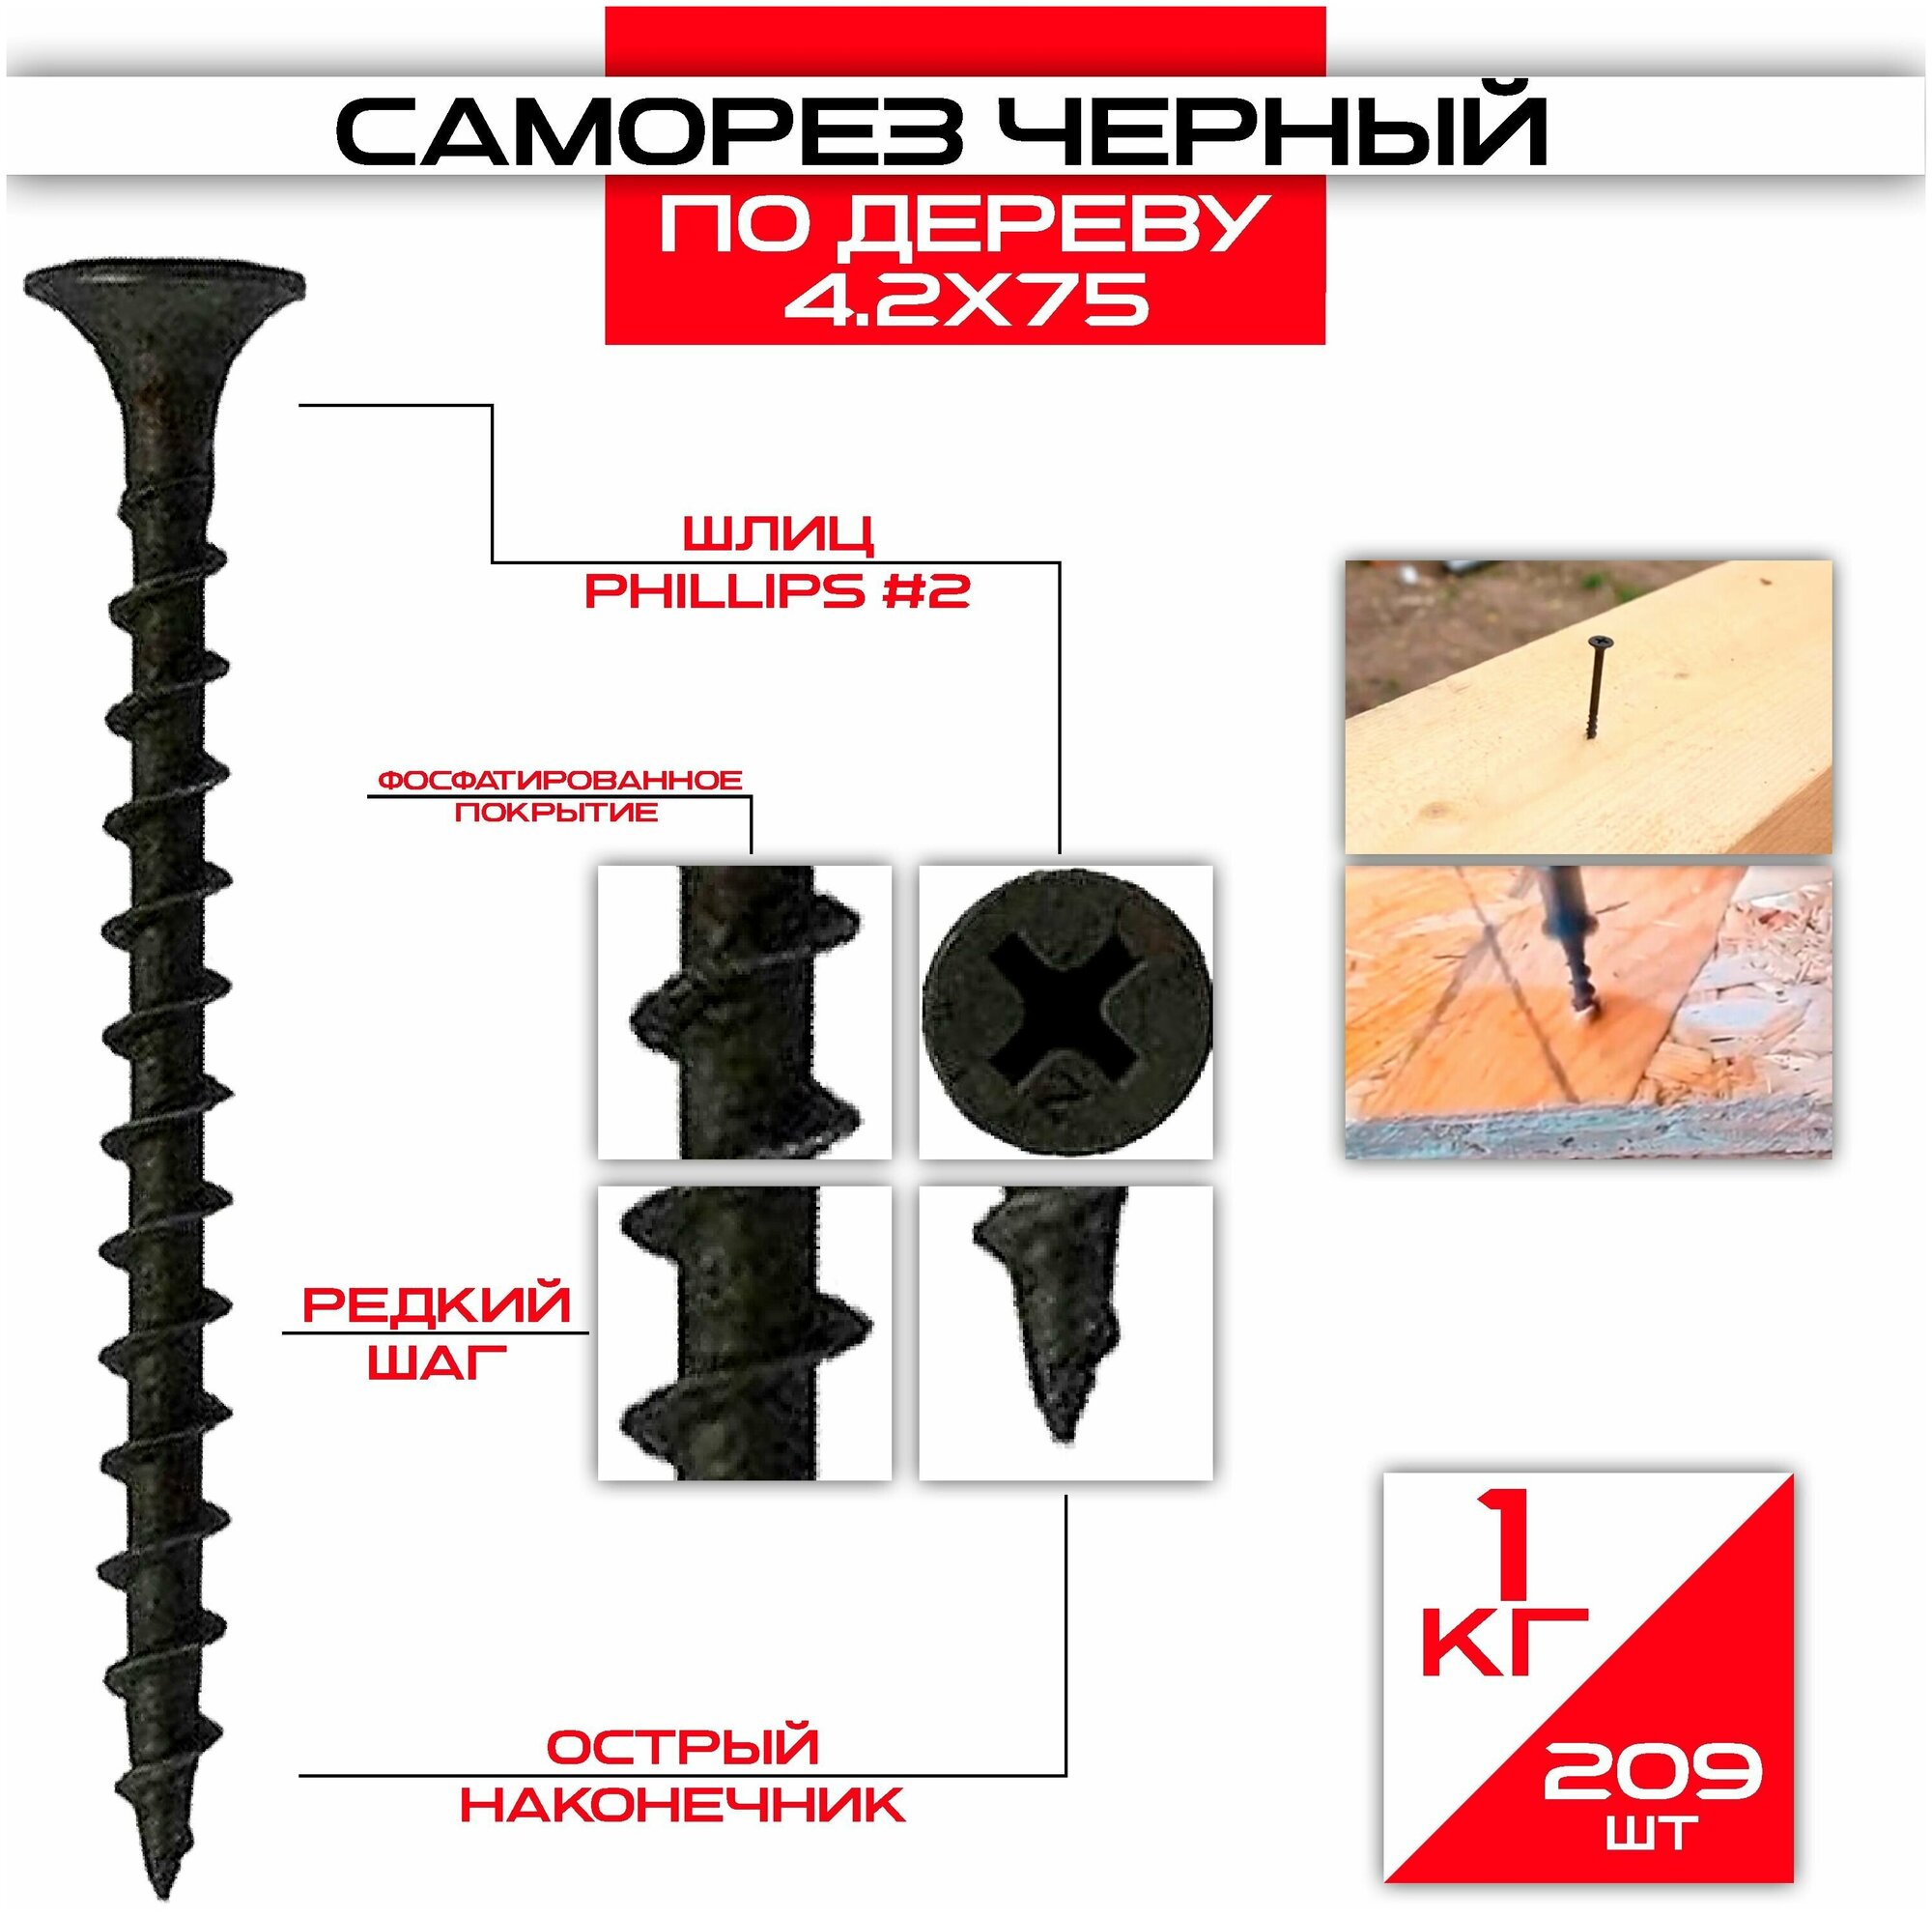 Саморезы по дереву 4,2 х 75 мм (209 шт/1 кг) — купить в интернет-магазине по низкой цене на Яндекс Маркете